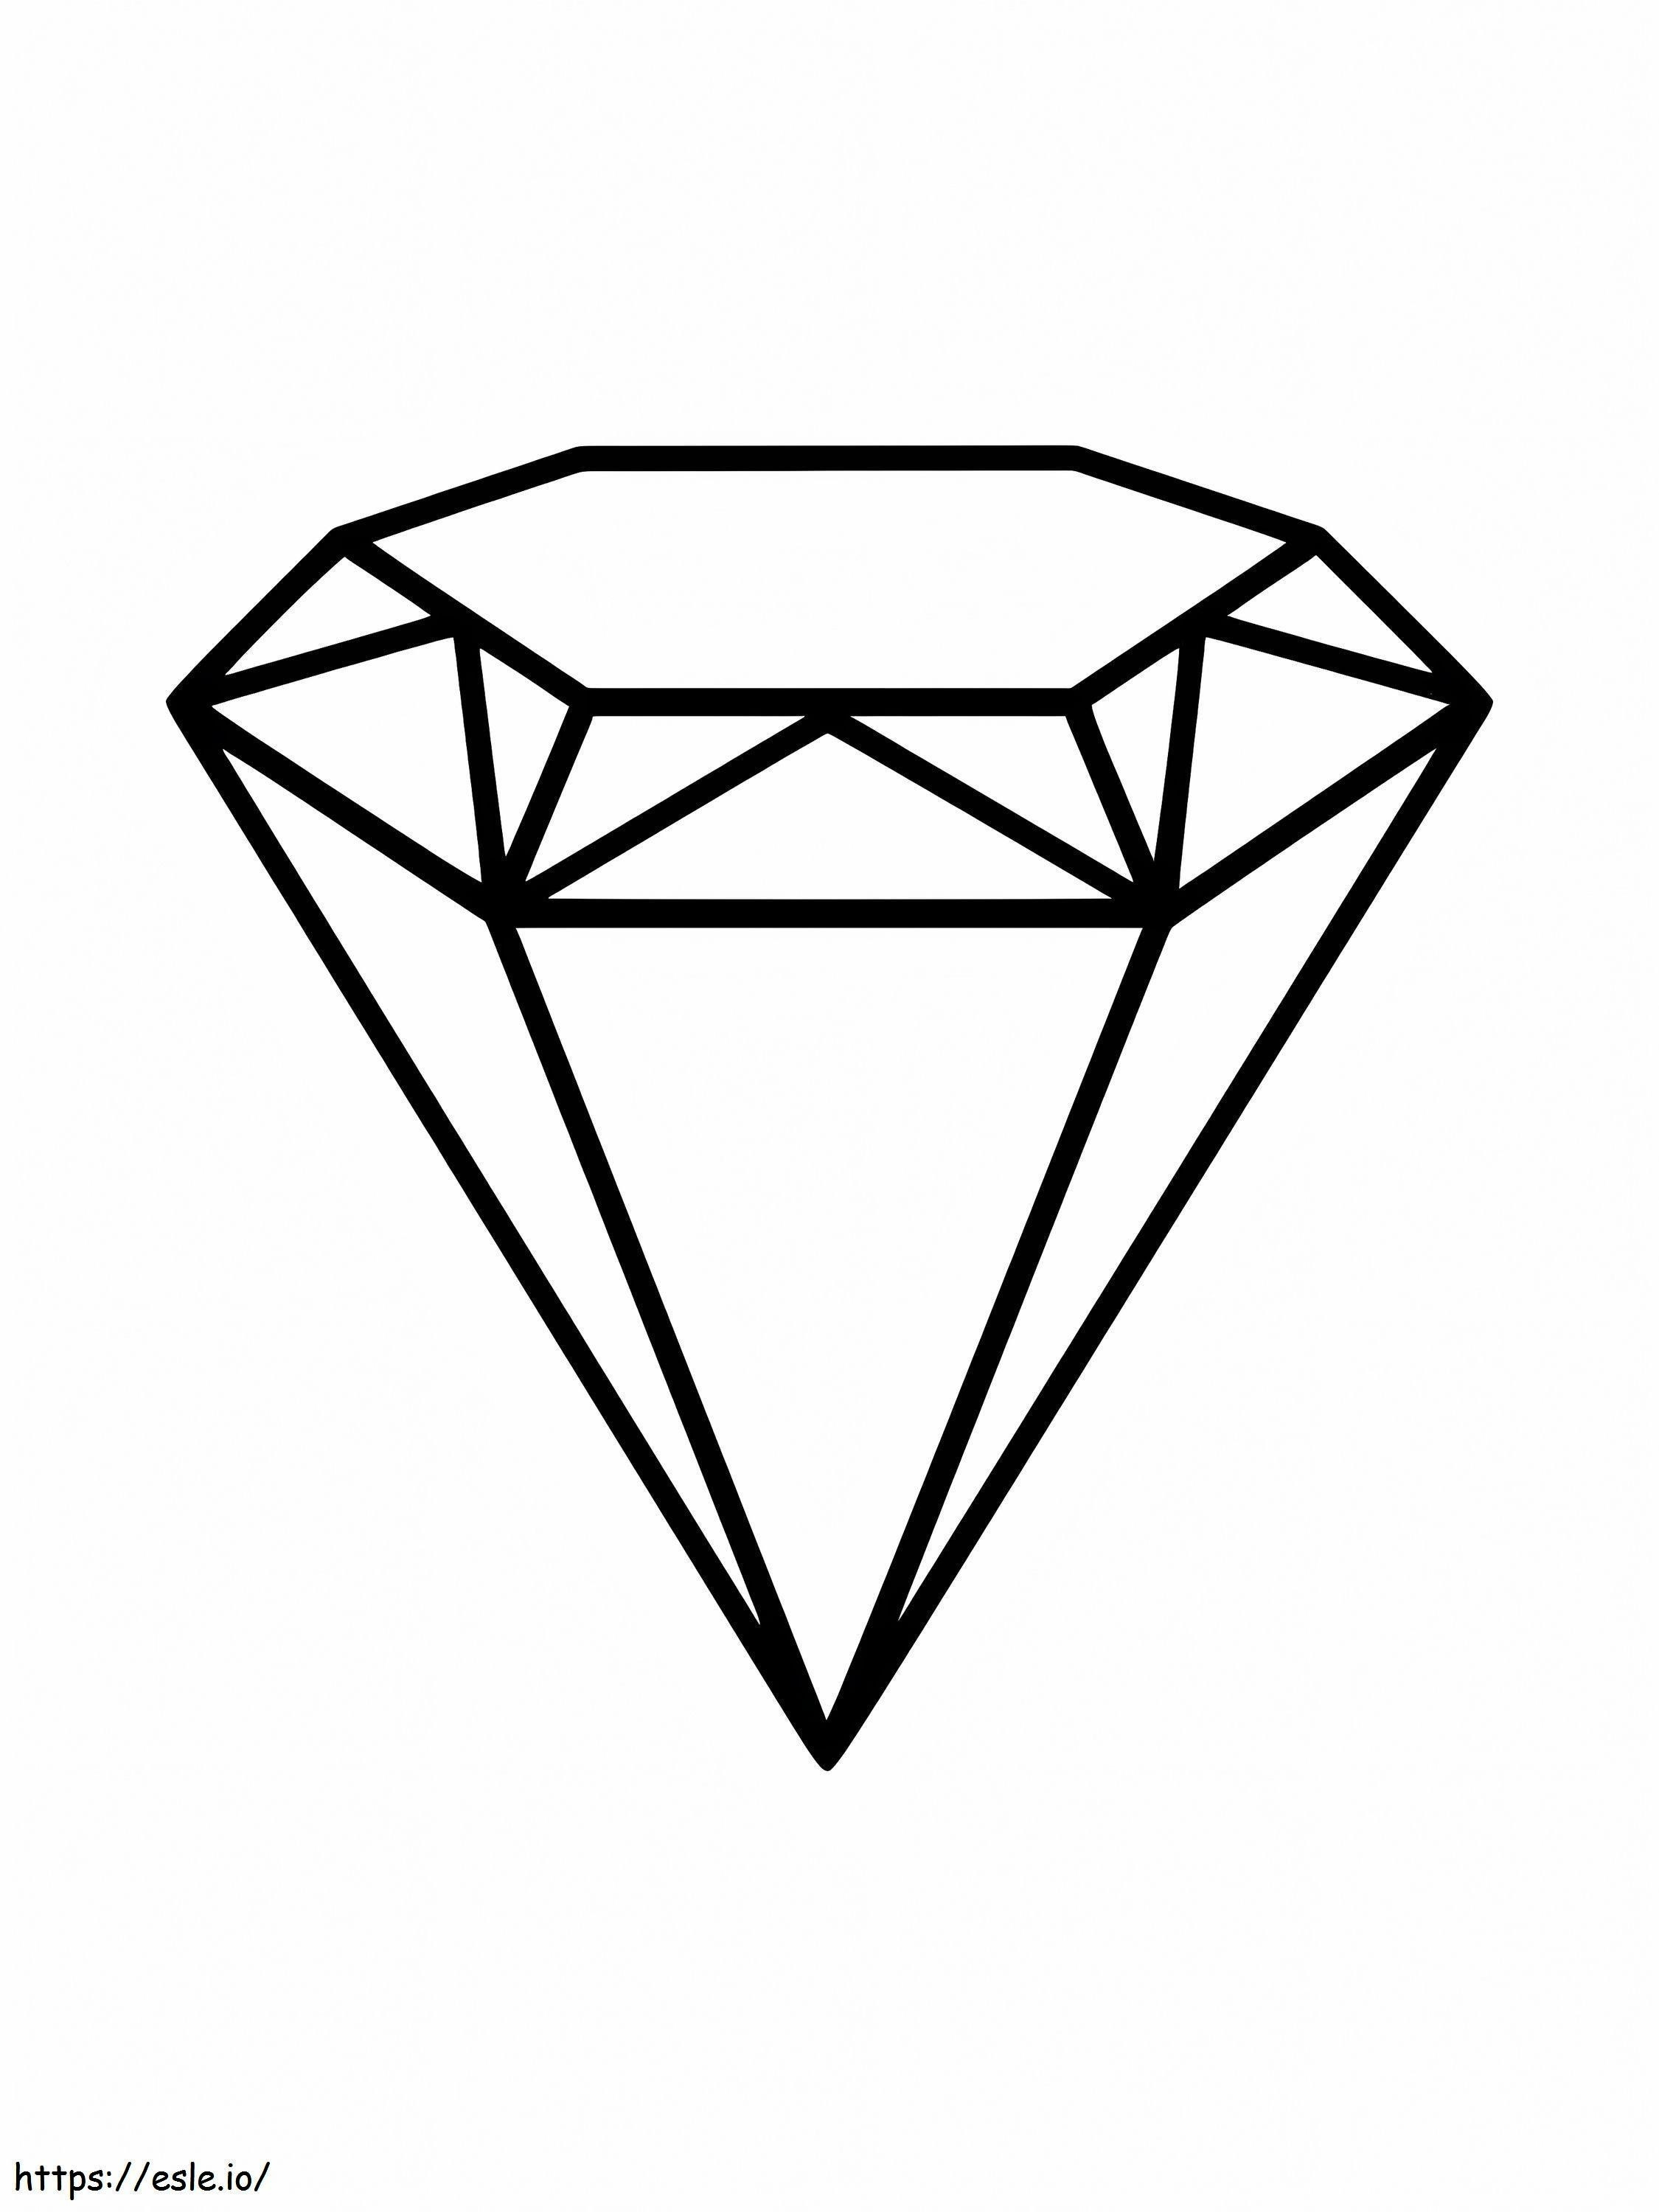 Ein Diamant ausmalbilder